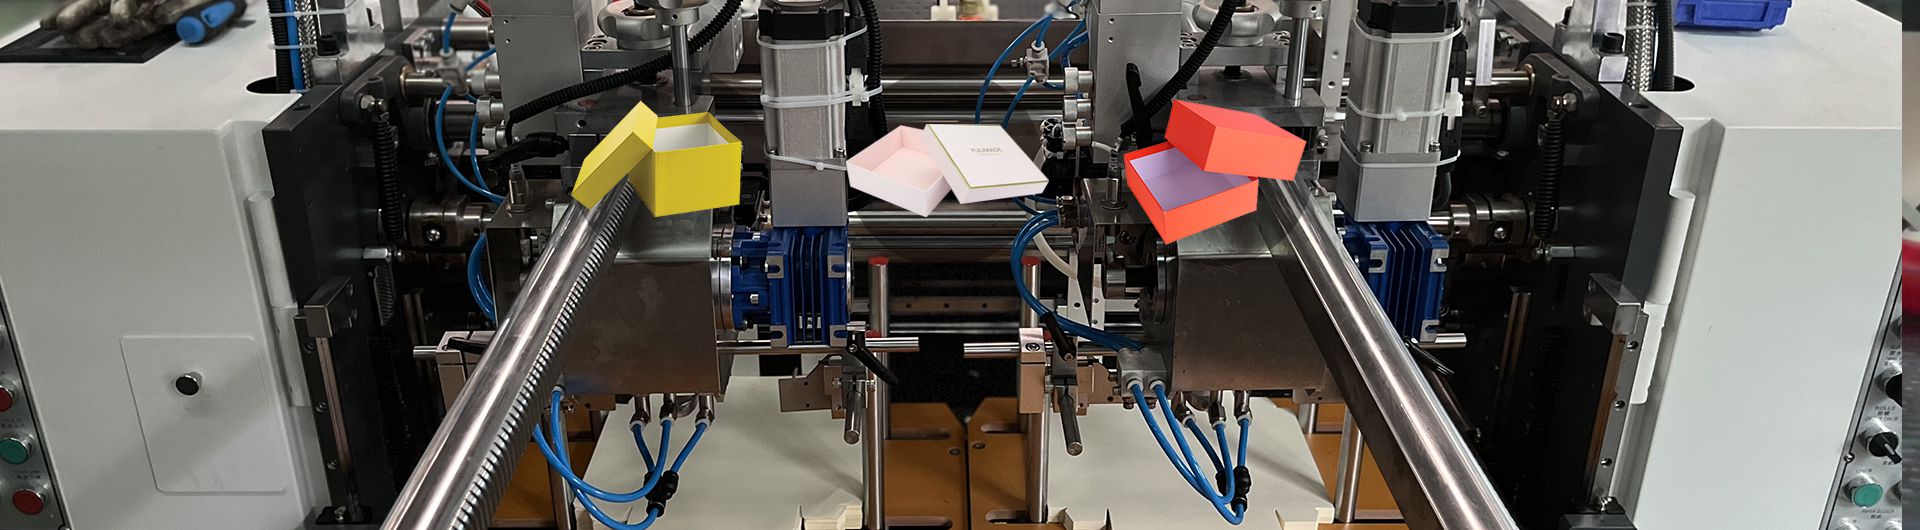 مصنع ماكينات تصنيع صناديق الكرتون الصلبة